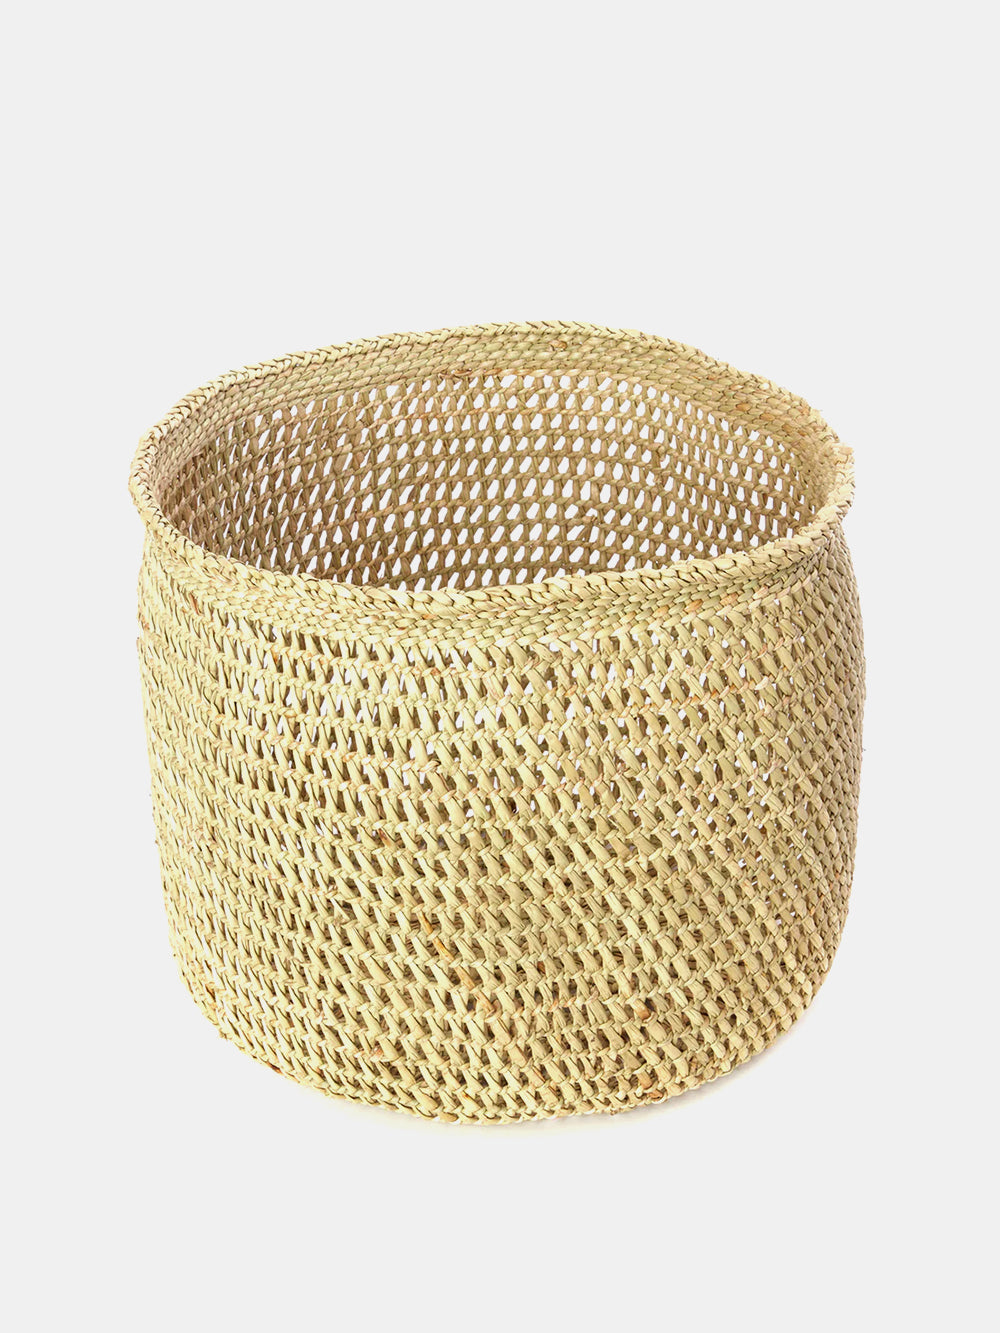 Large Iringa Basket With Open Weave